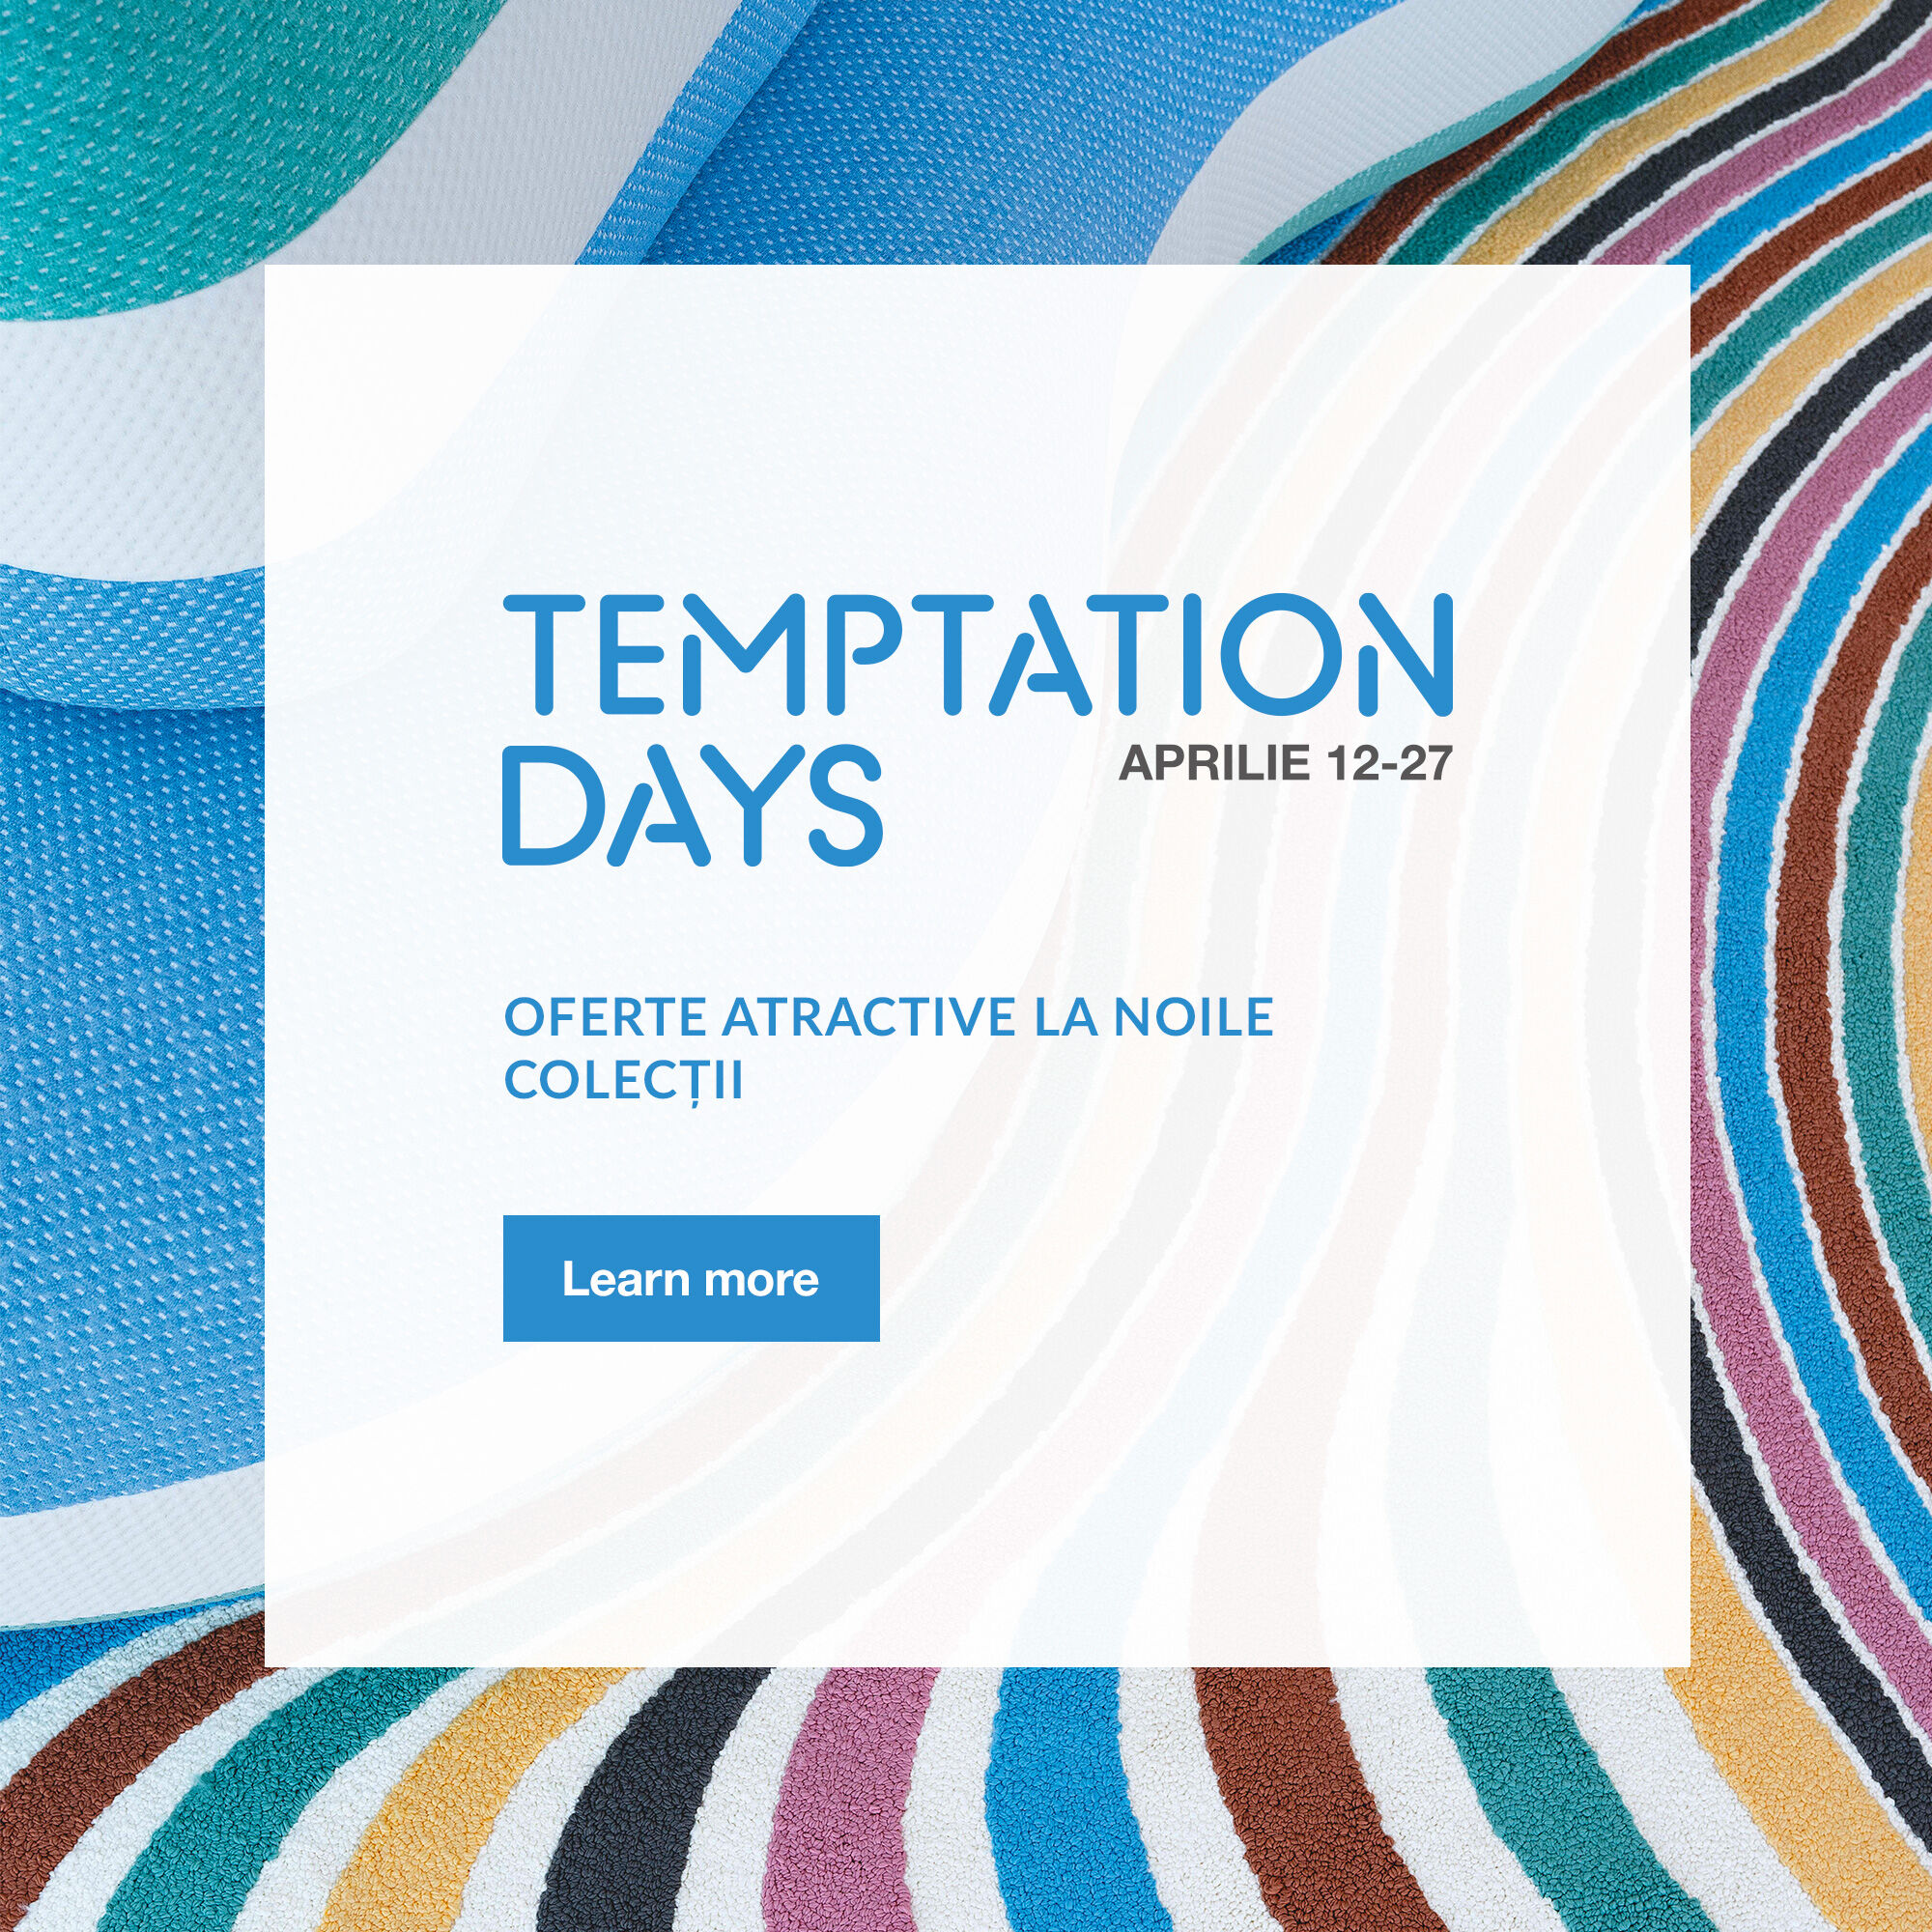 Temptation Days” începe pe 12 Aprilie.